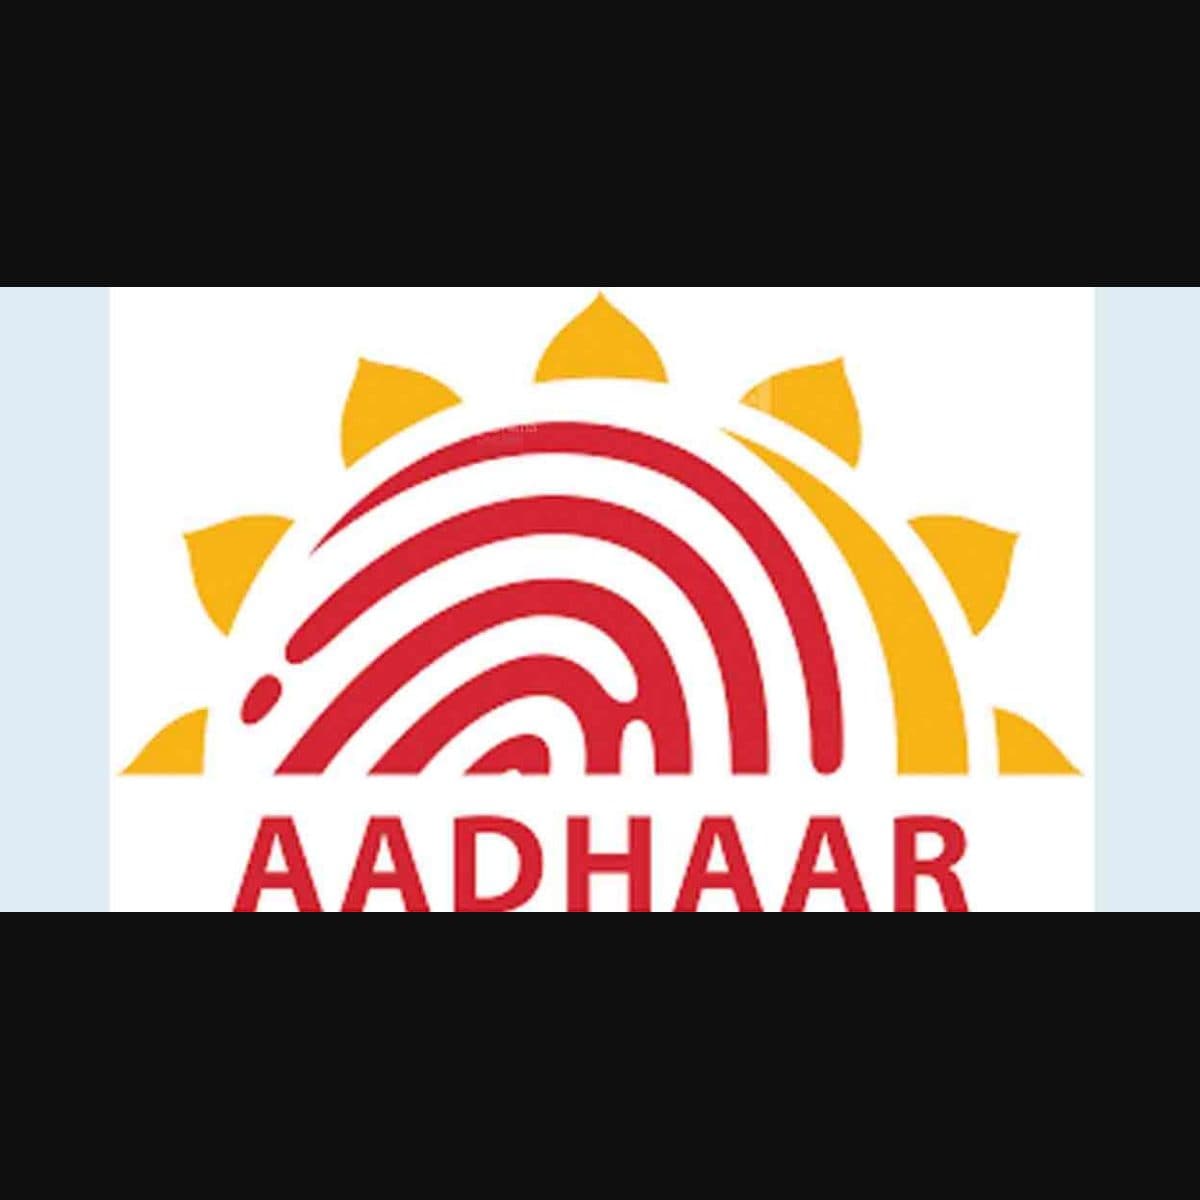 Aadhaar ll 128 ll how to create Aadhaar logo in CorelDraw, Aadhaar logo  tutorial - YouTube